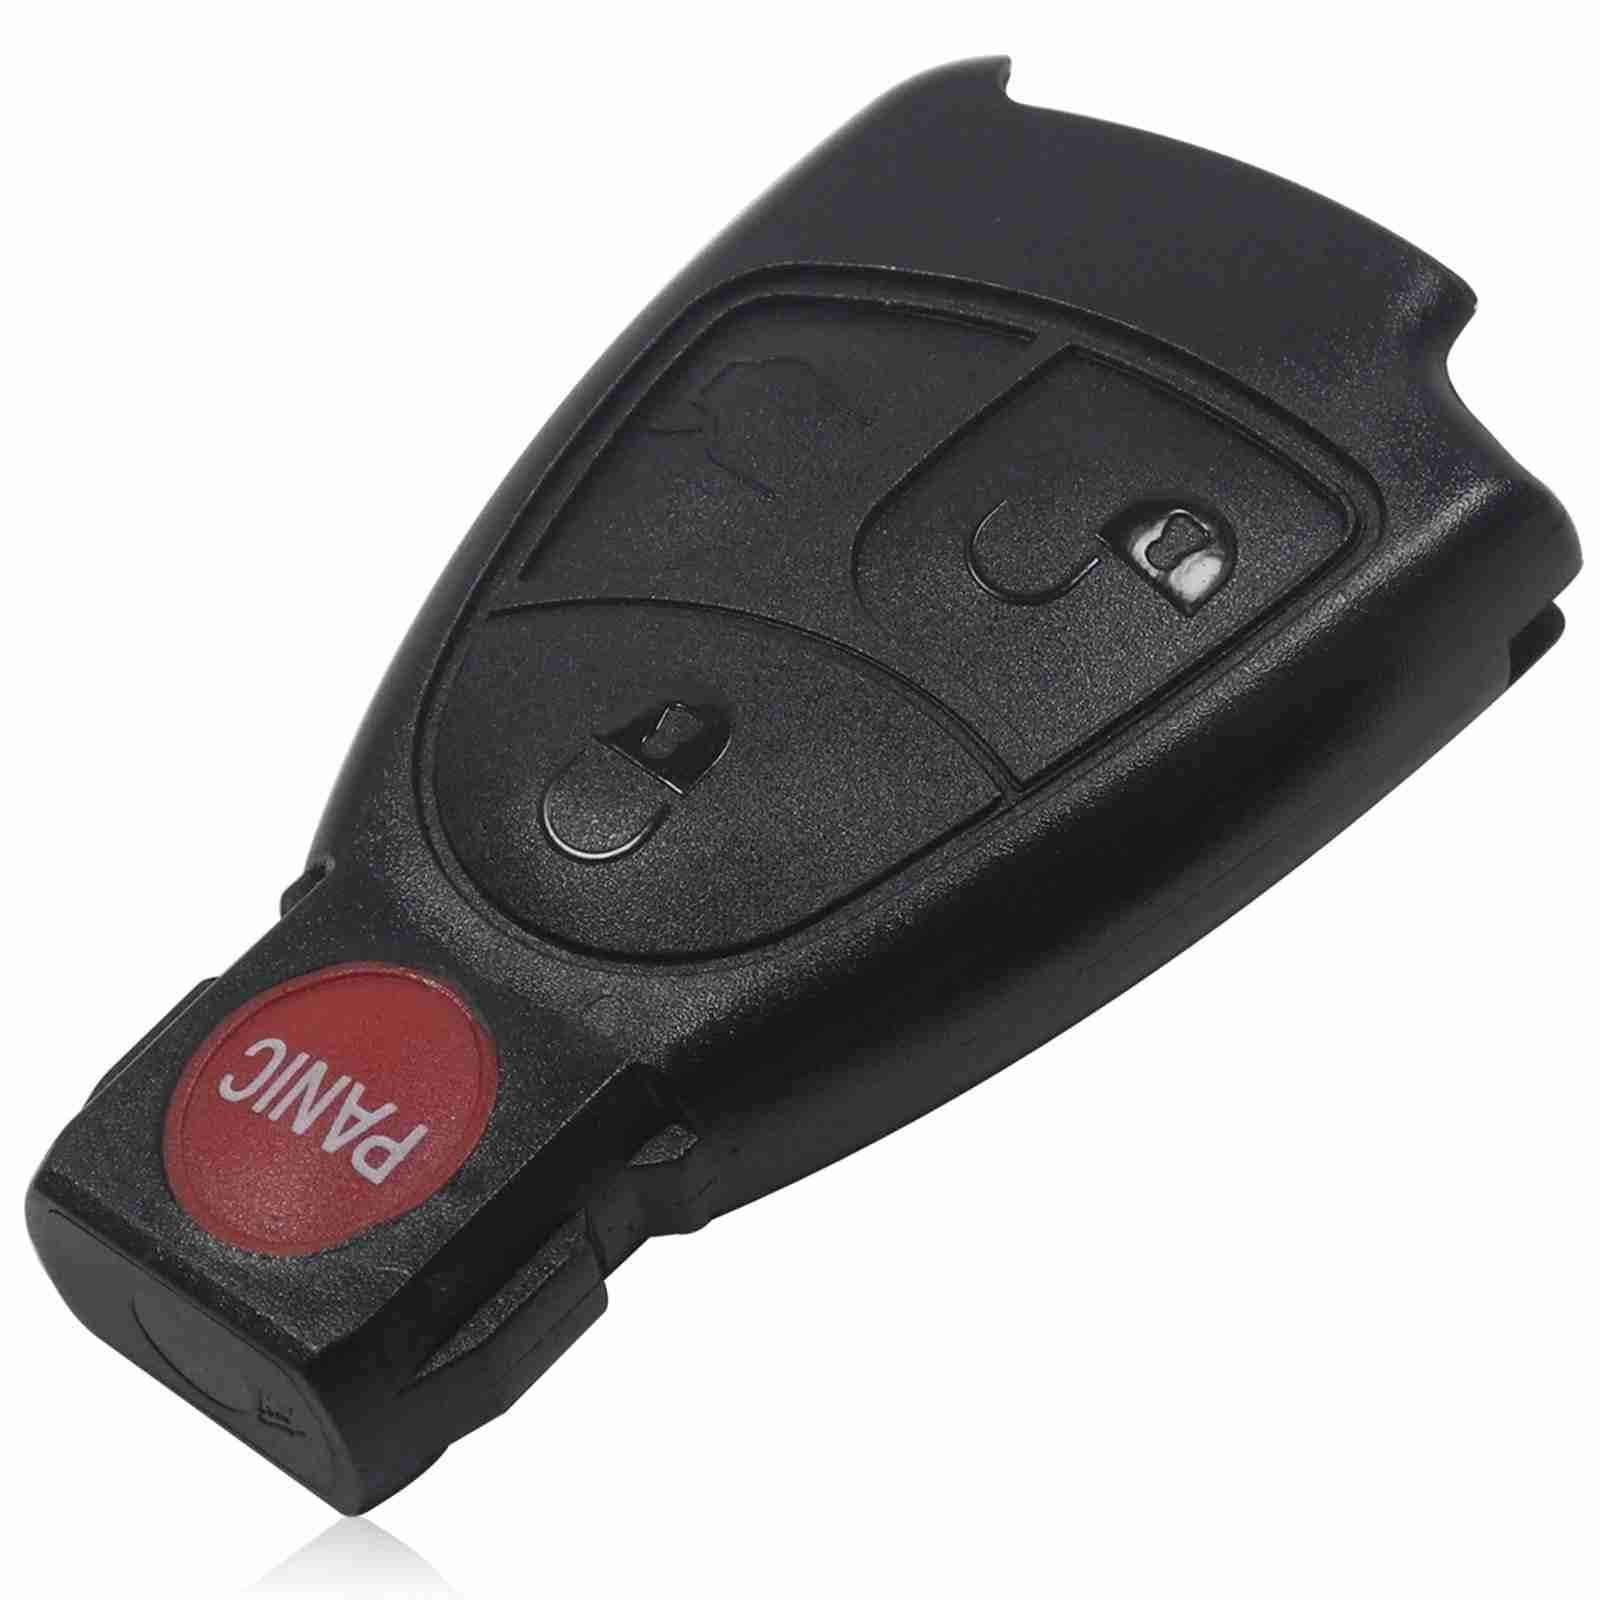 Fekete színű, 3 gombos Mercedes kulcsház piros színű PANIC gombbal.